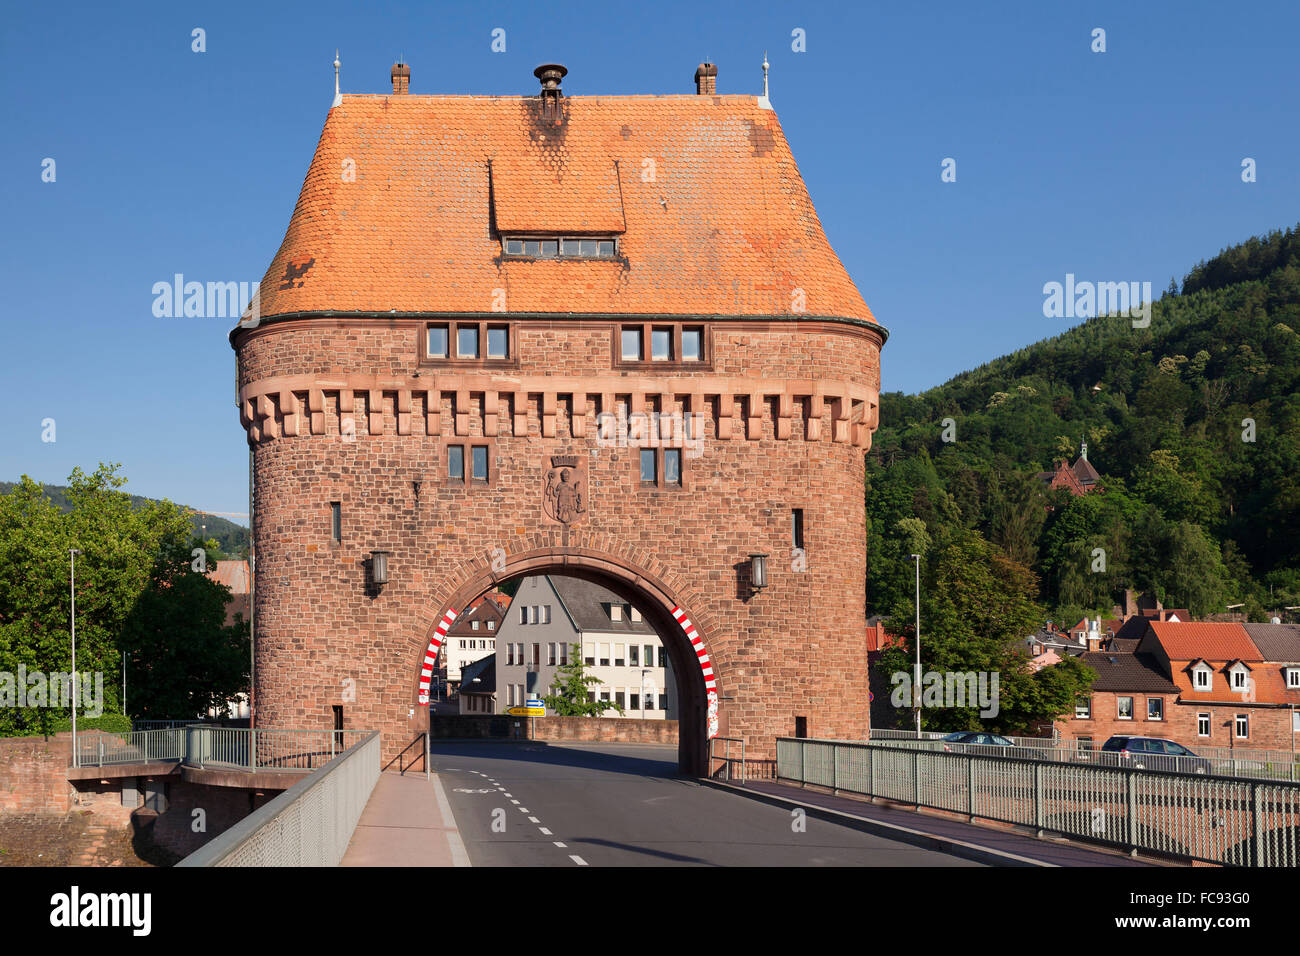 Bridge Gate sur un pont sur la rivière Main, Miltenberg, Franconia, Bavaria, Germany, Europe Banque D'Images